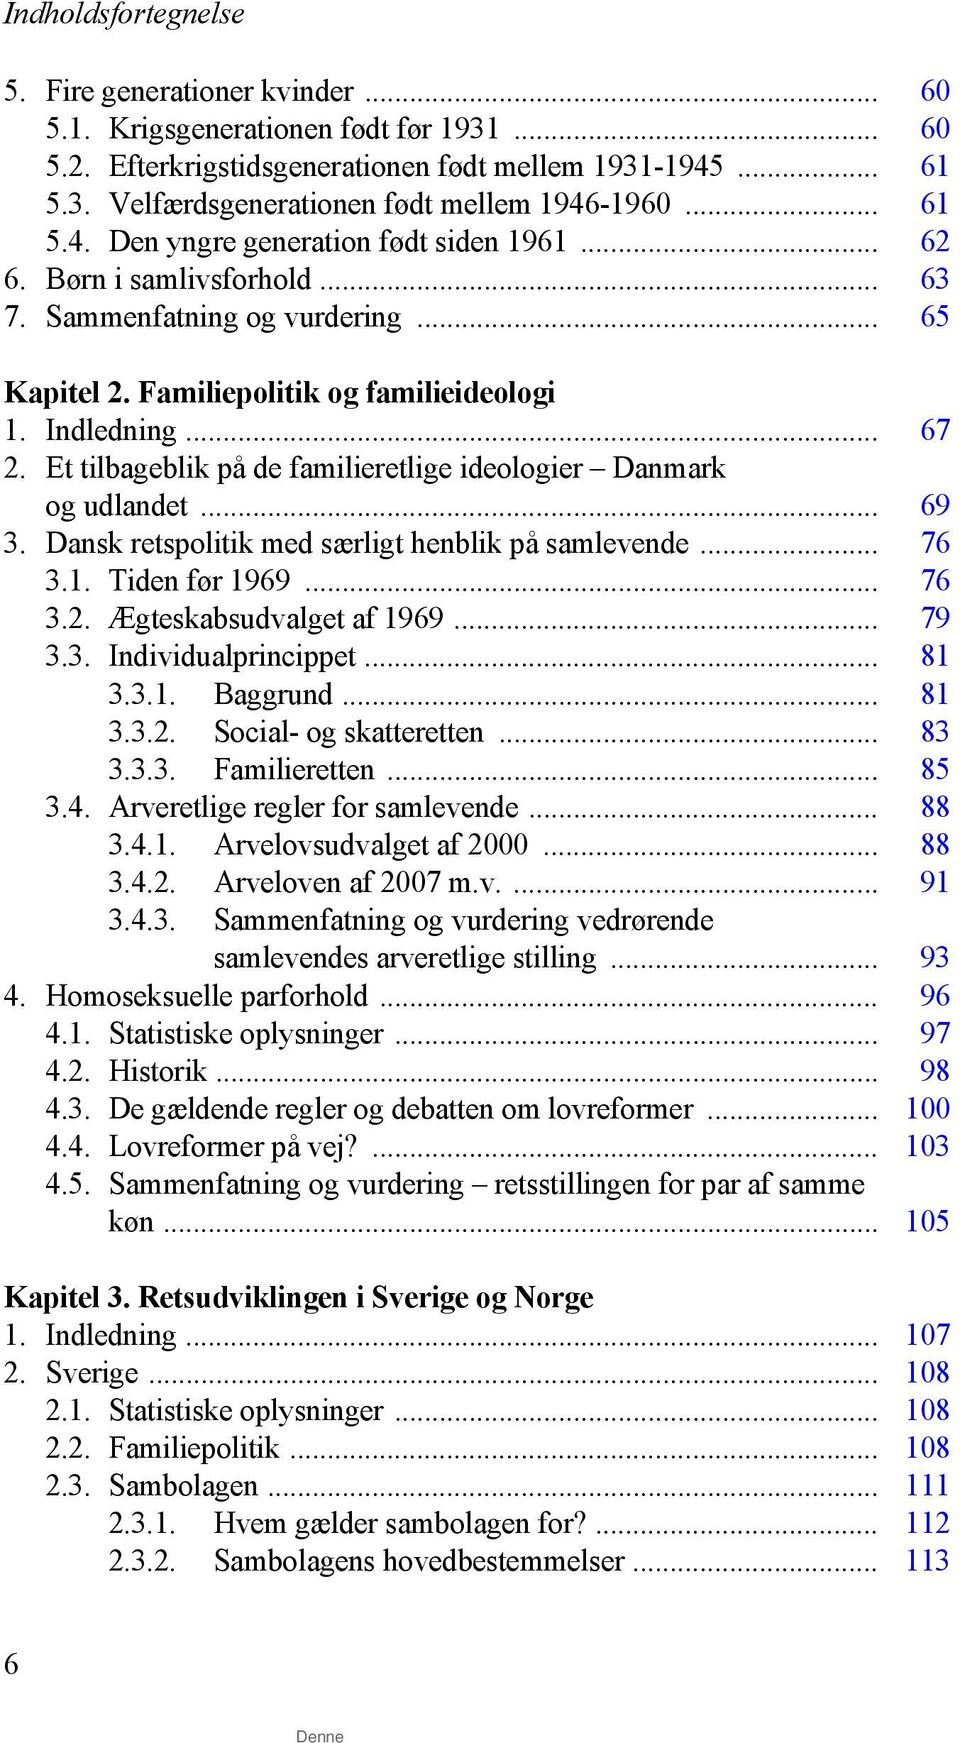 Et tilbageblik på de familieretlige ideologier Danmark og udlandet... 69 3. Dansk retspolitik med særligt henblik på samlevende... 76 3.1. Tiden før 1969... 76 3.2. Ægteskabsudvalget af 1969... 79 3.